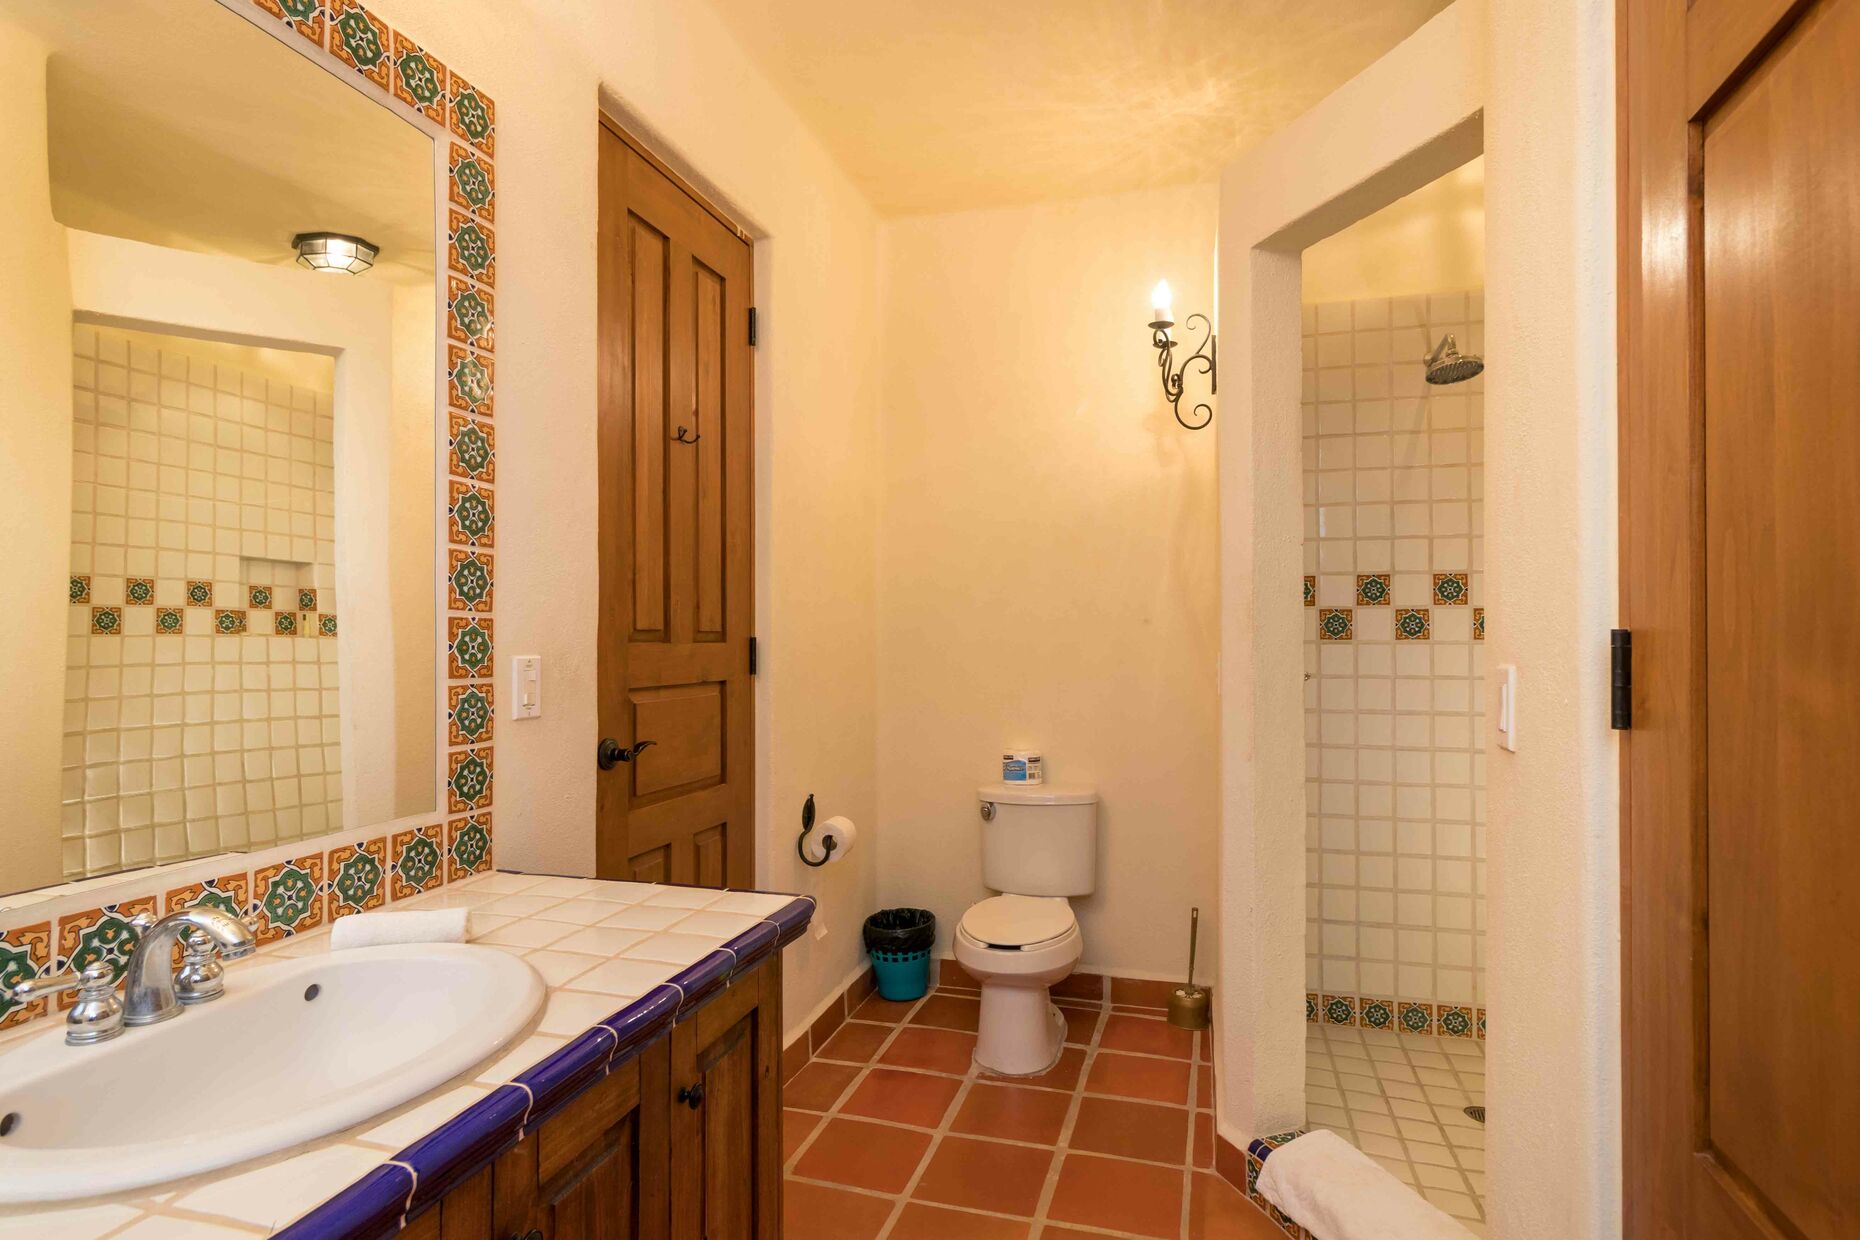 Full Bathroom Downstairs / Vanity Mirror / Shower